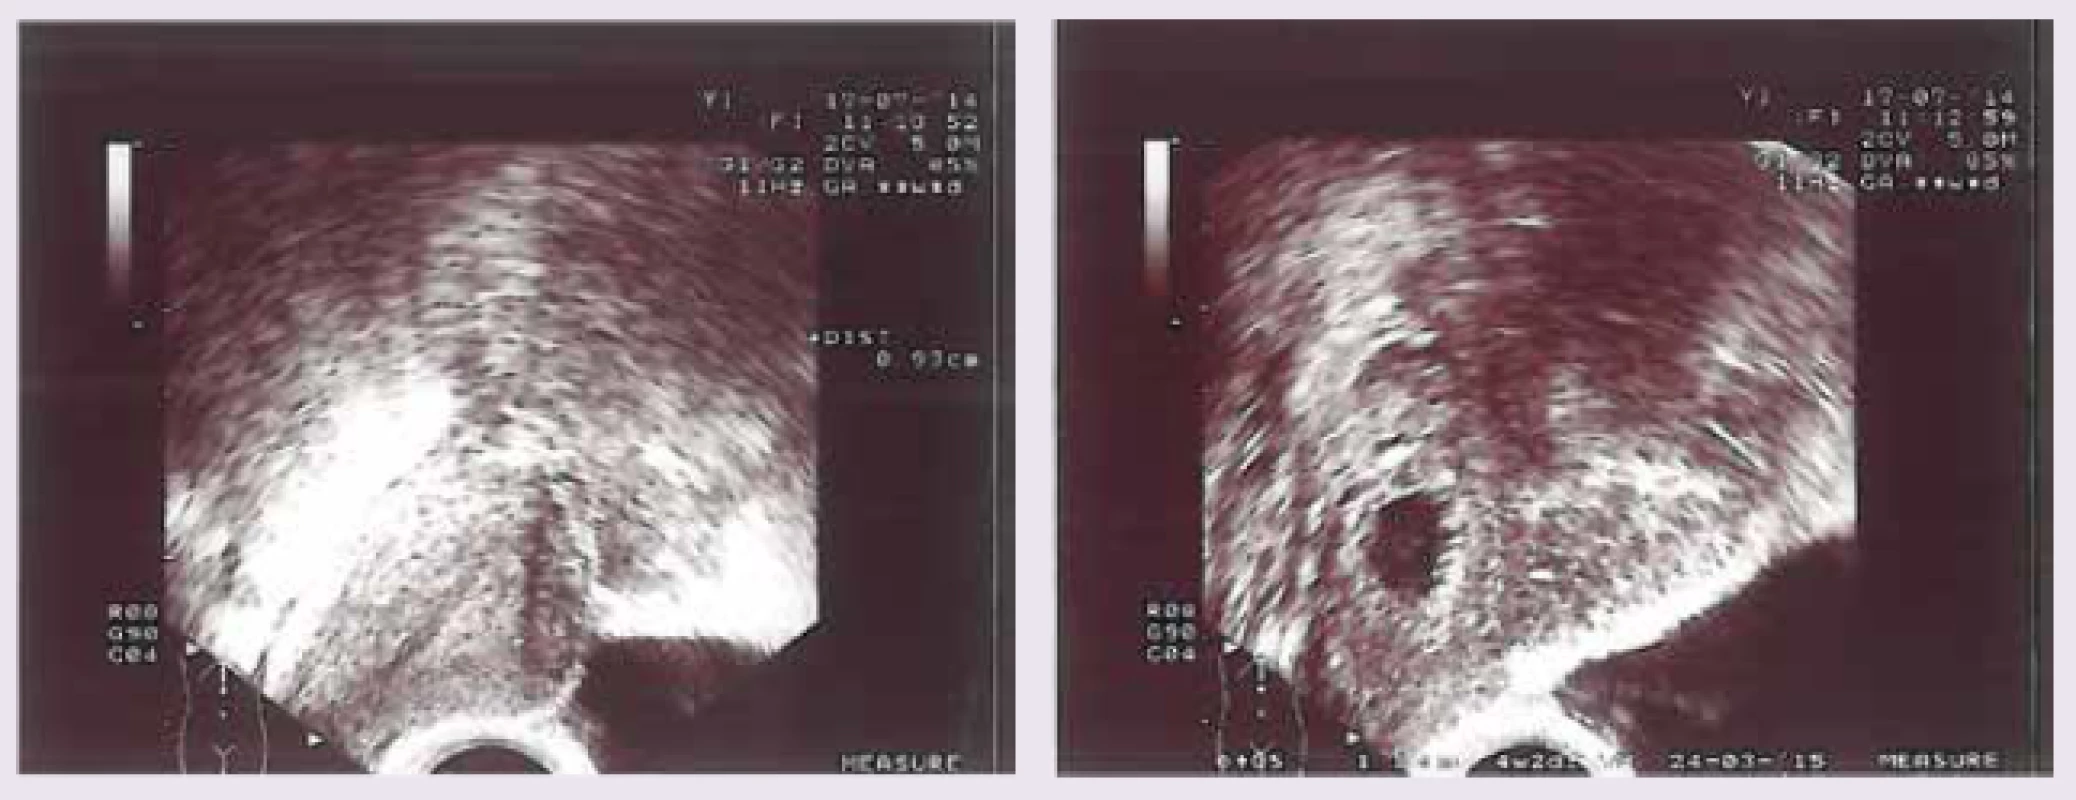 Pohled na pravý roh děložní s gestačním váčkem velikosti 11 mm odpovídající gestačnímu týdnu 4 + 1